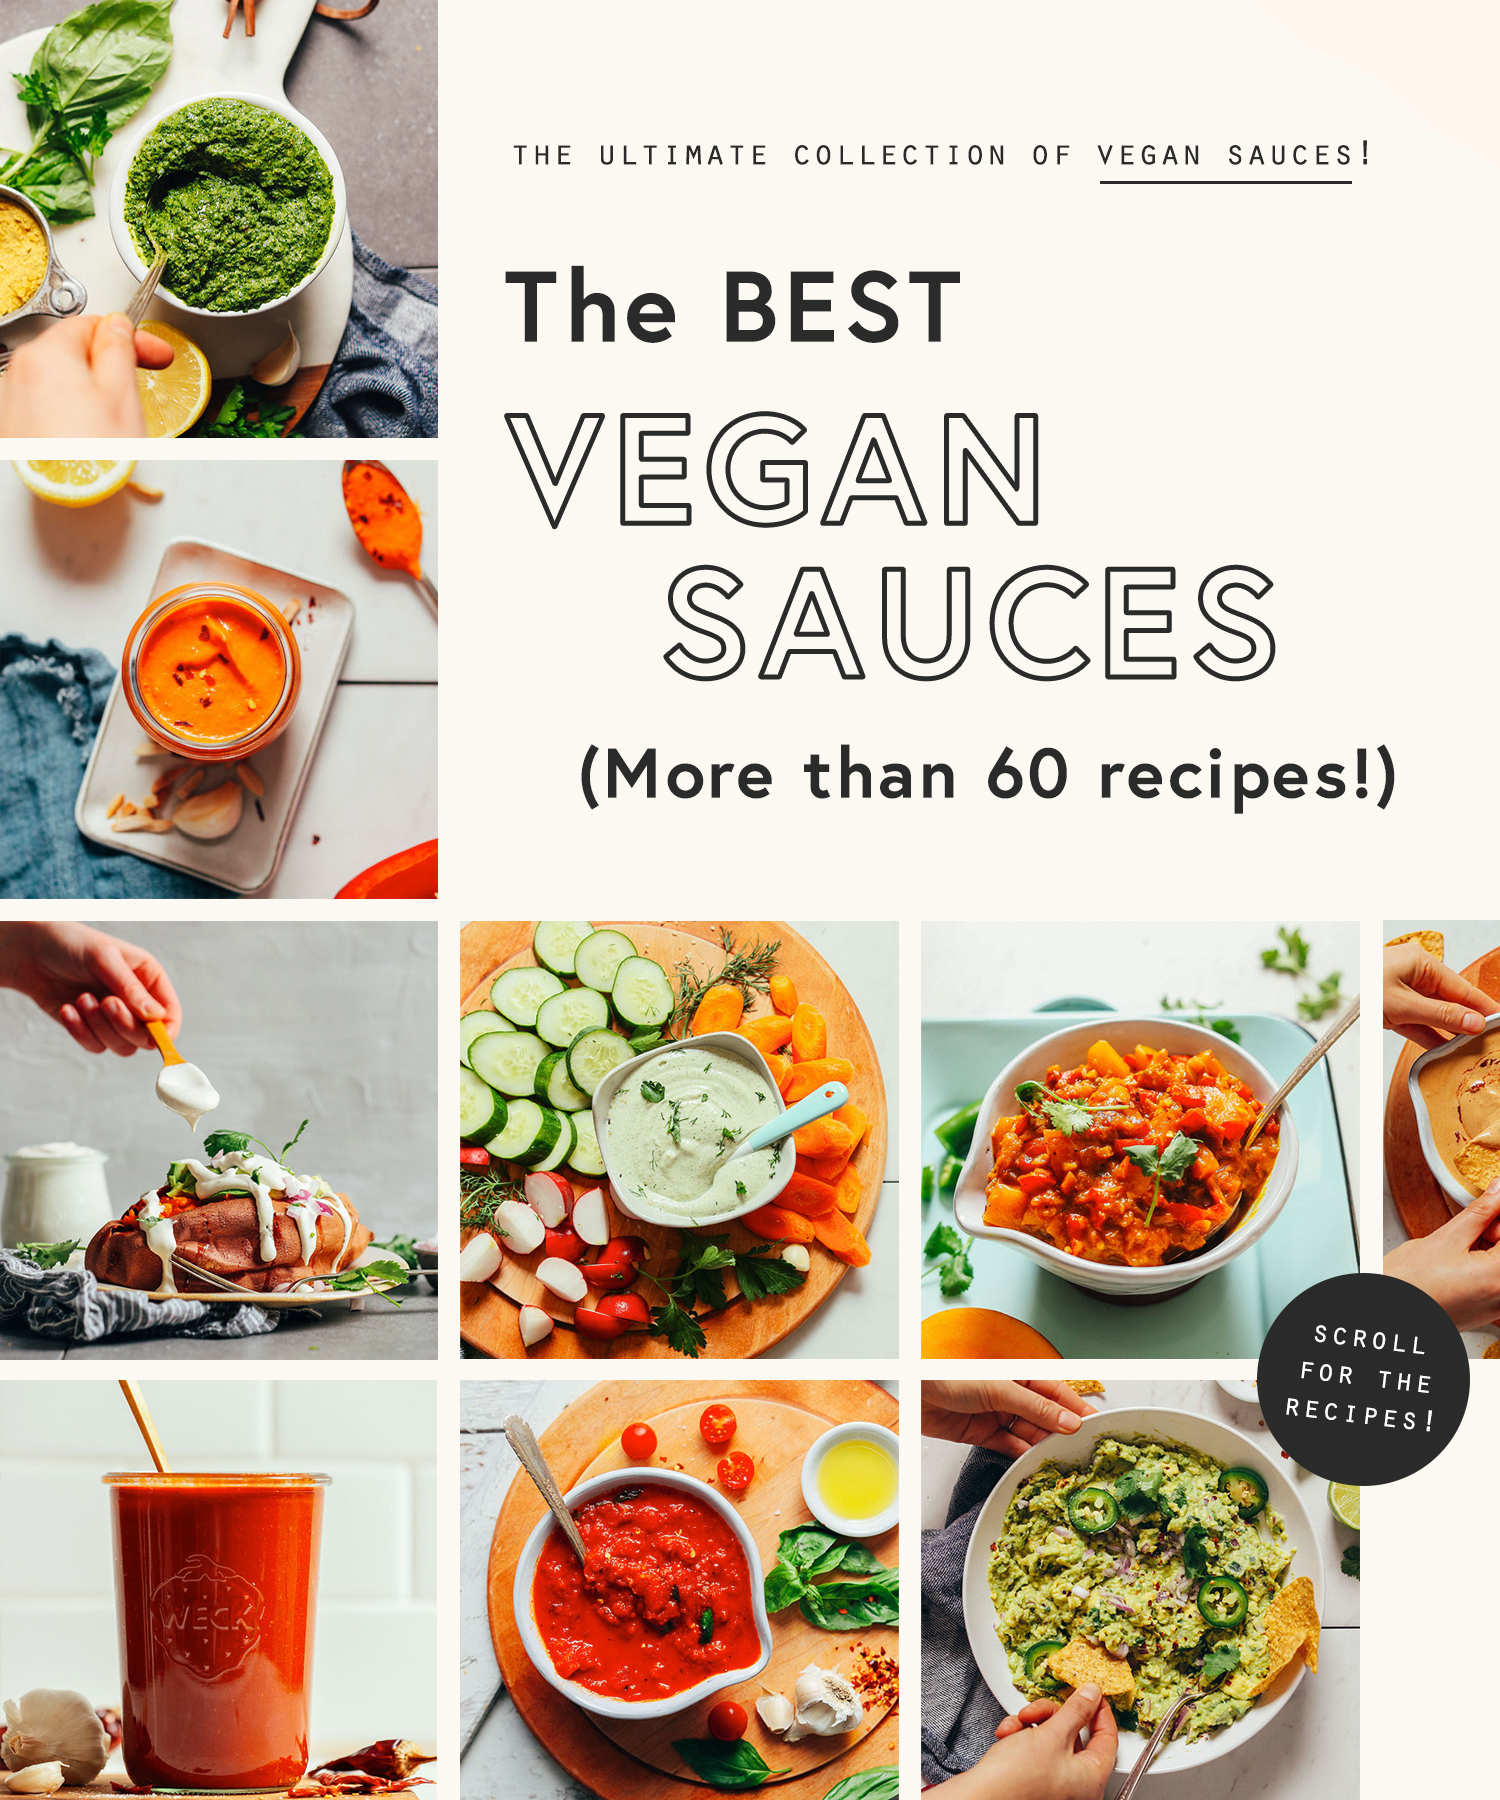 Photos of the best vegan sauces